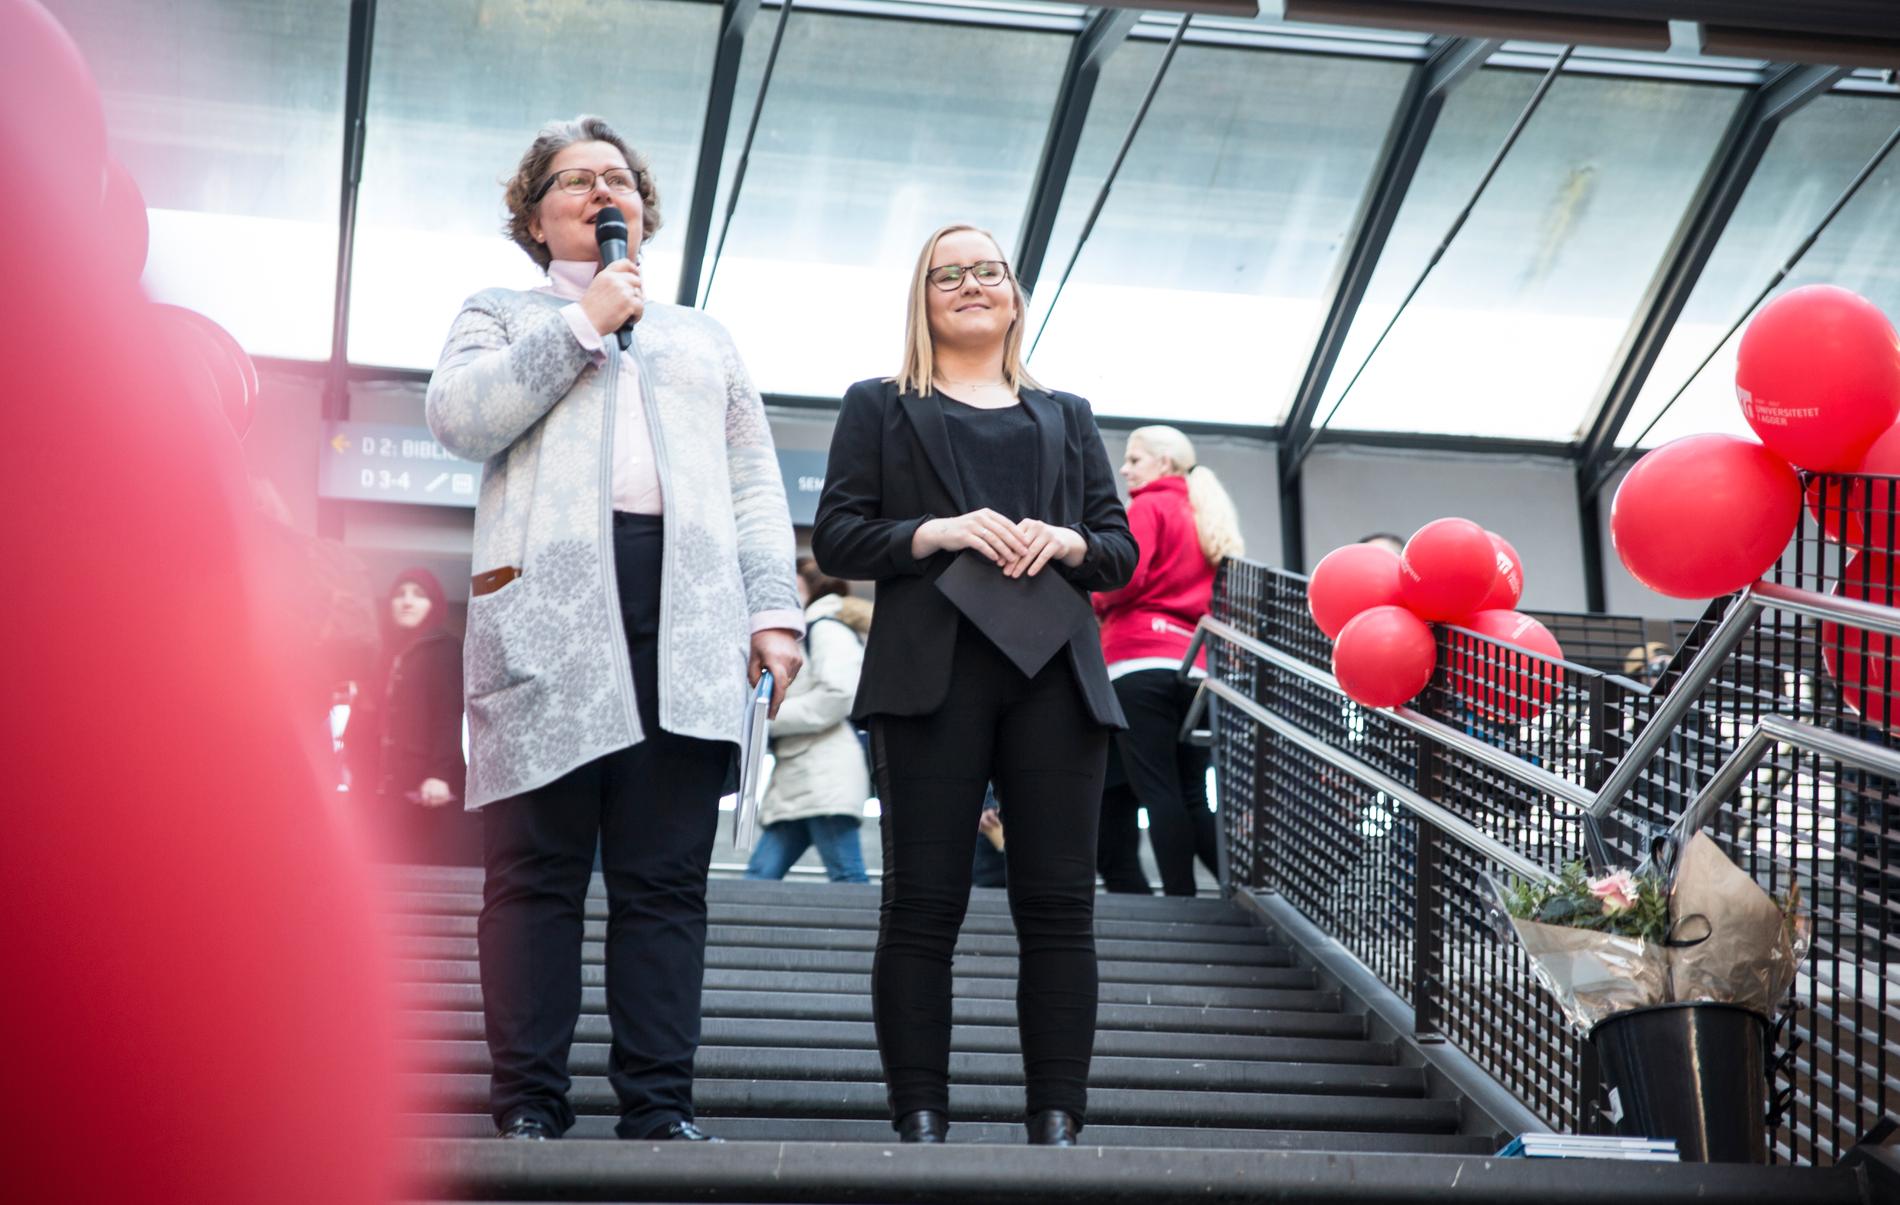 Astrid Birgitte Eggen, viserektor, åpnet den nye Vrimlehallen med tale og blomster sammen med Benedicte Nordli, fagpolitisk ansvarlig ved UiA.